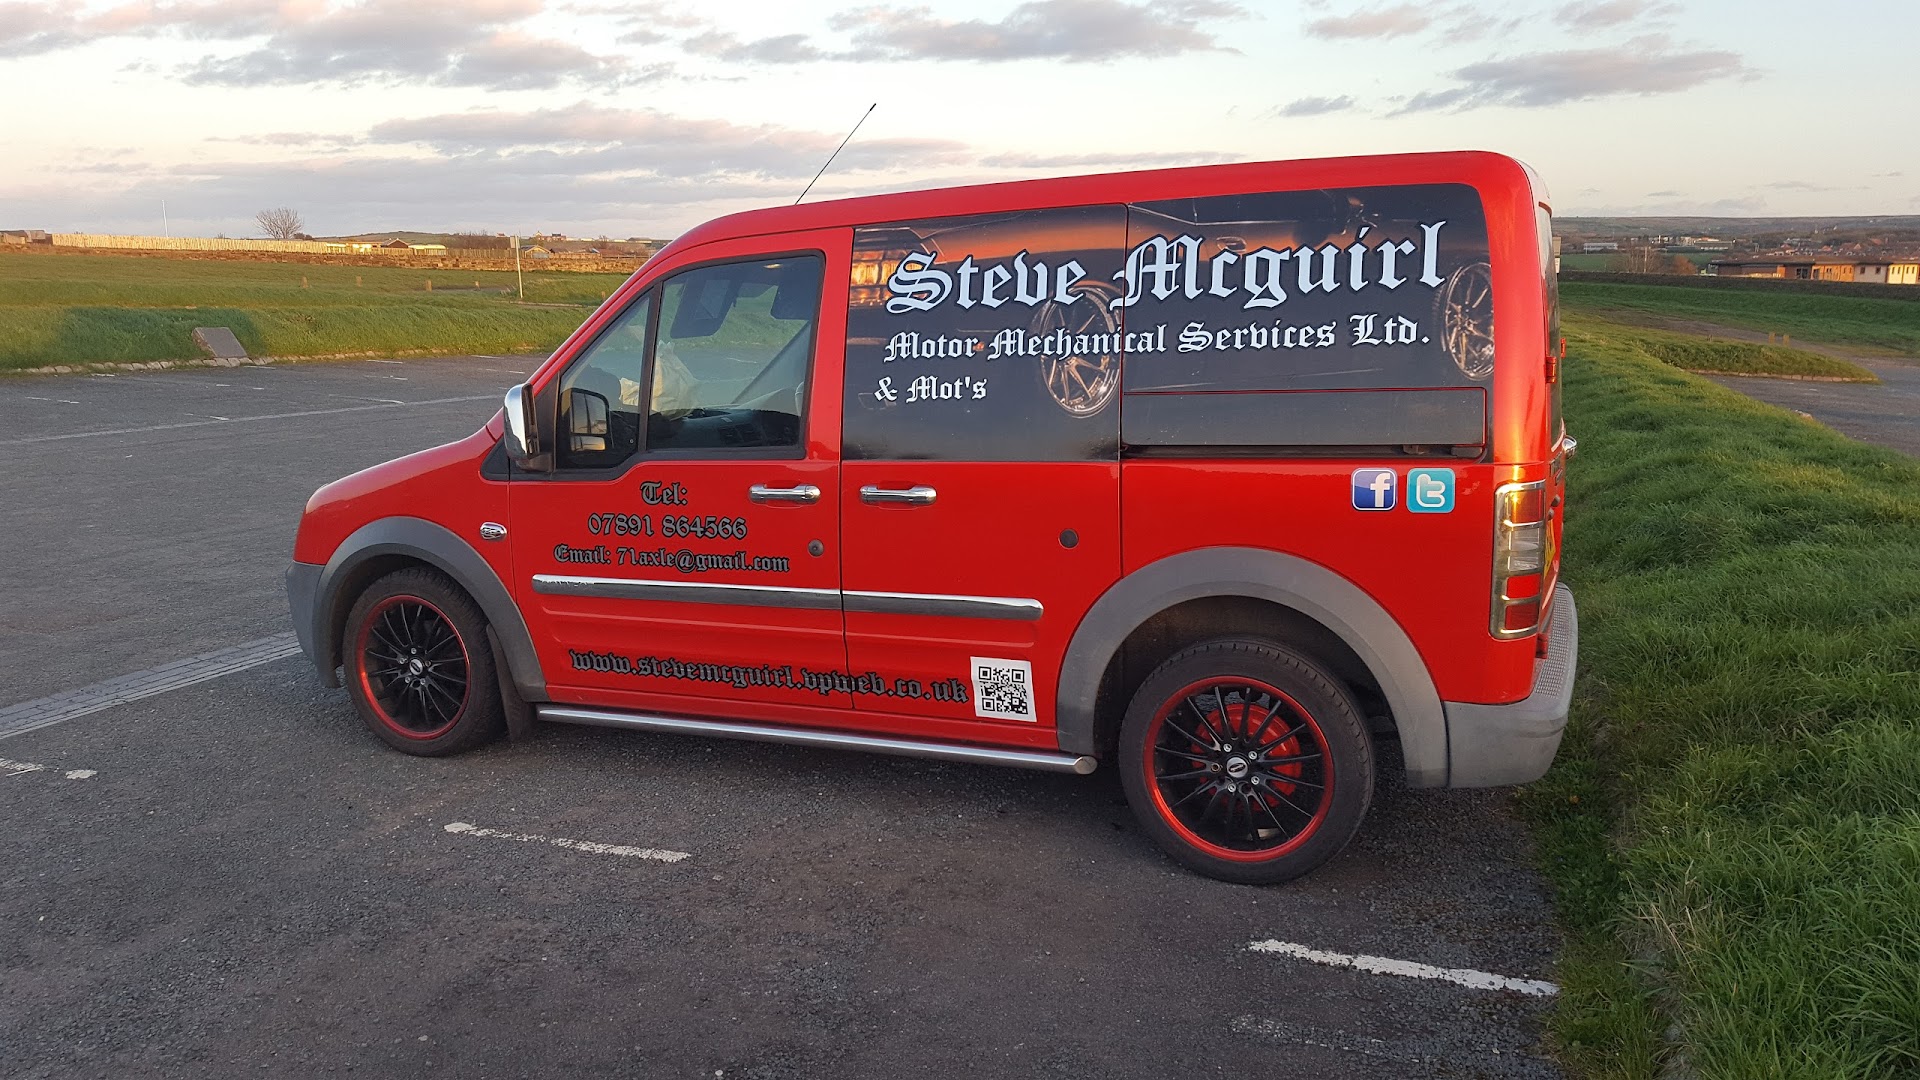 Steve Mcguirl Motor Mechanical Services Limited